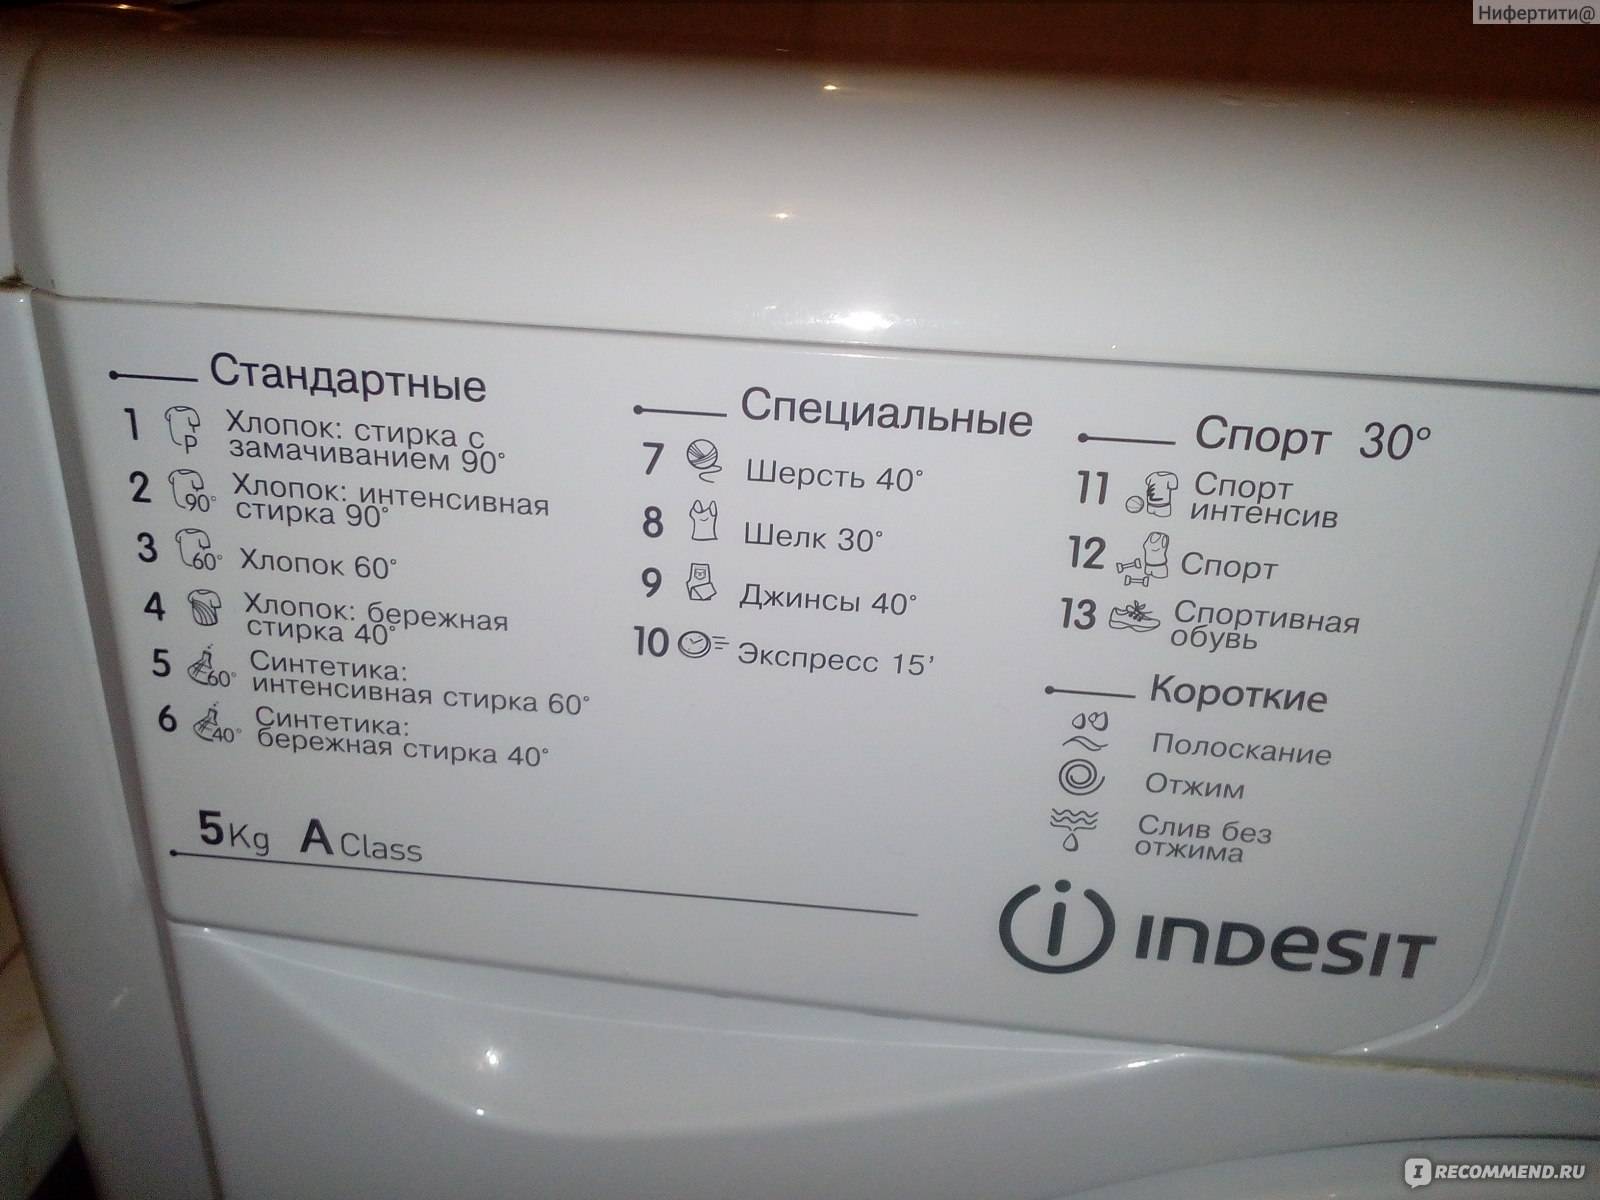 Таблица с кодами ошибок стиральных машин. приведены разные марки и модели.